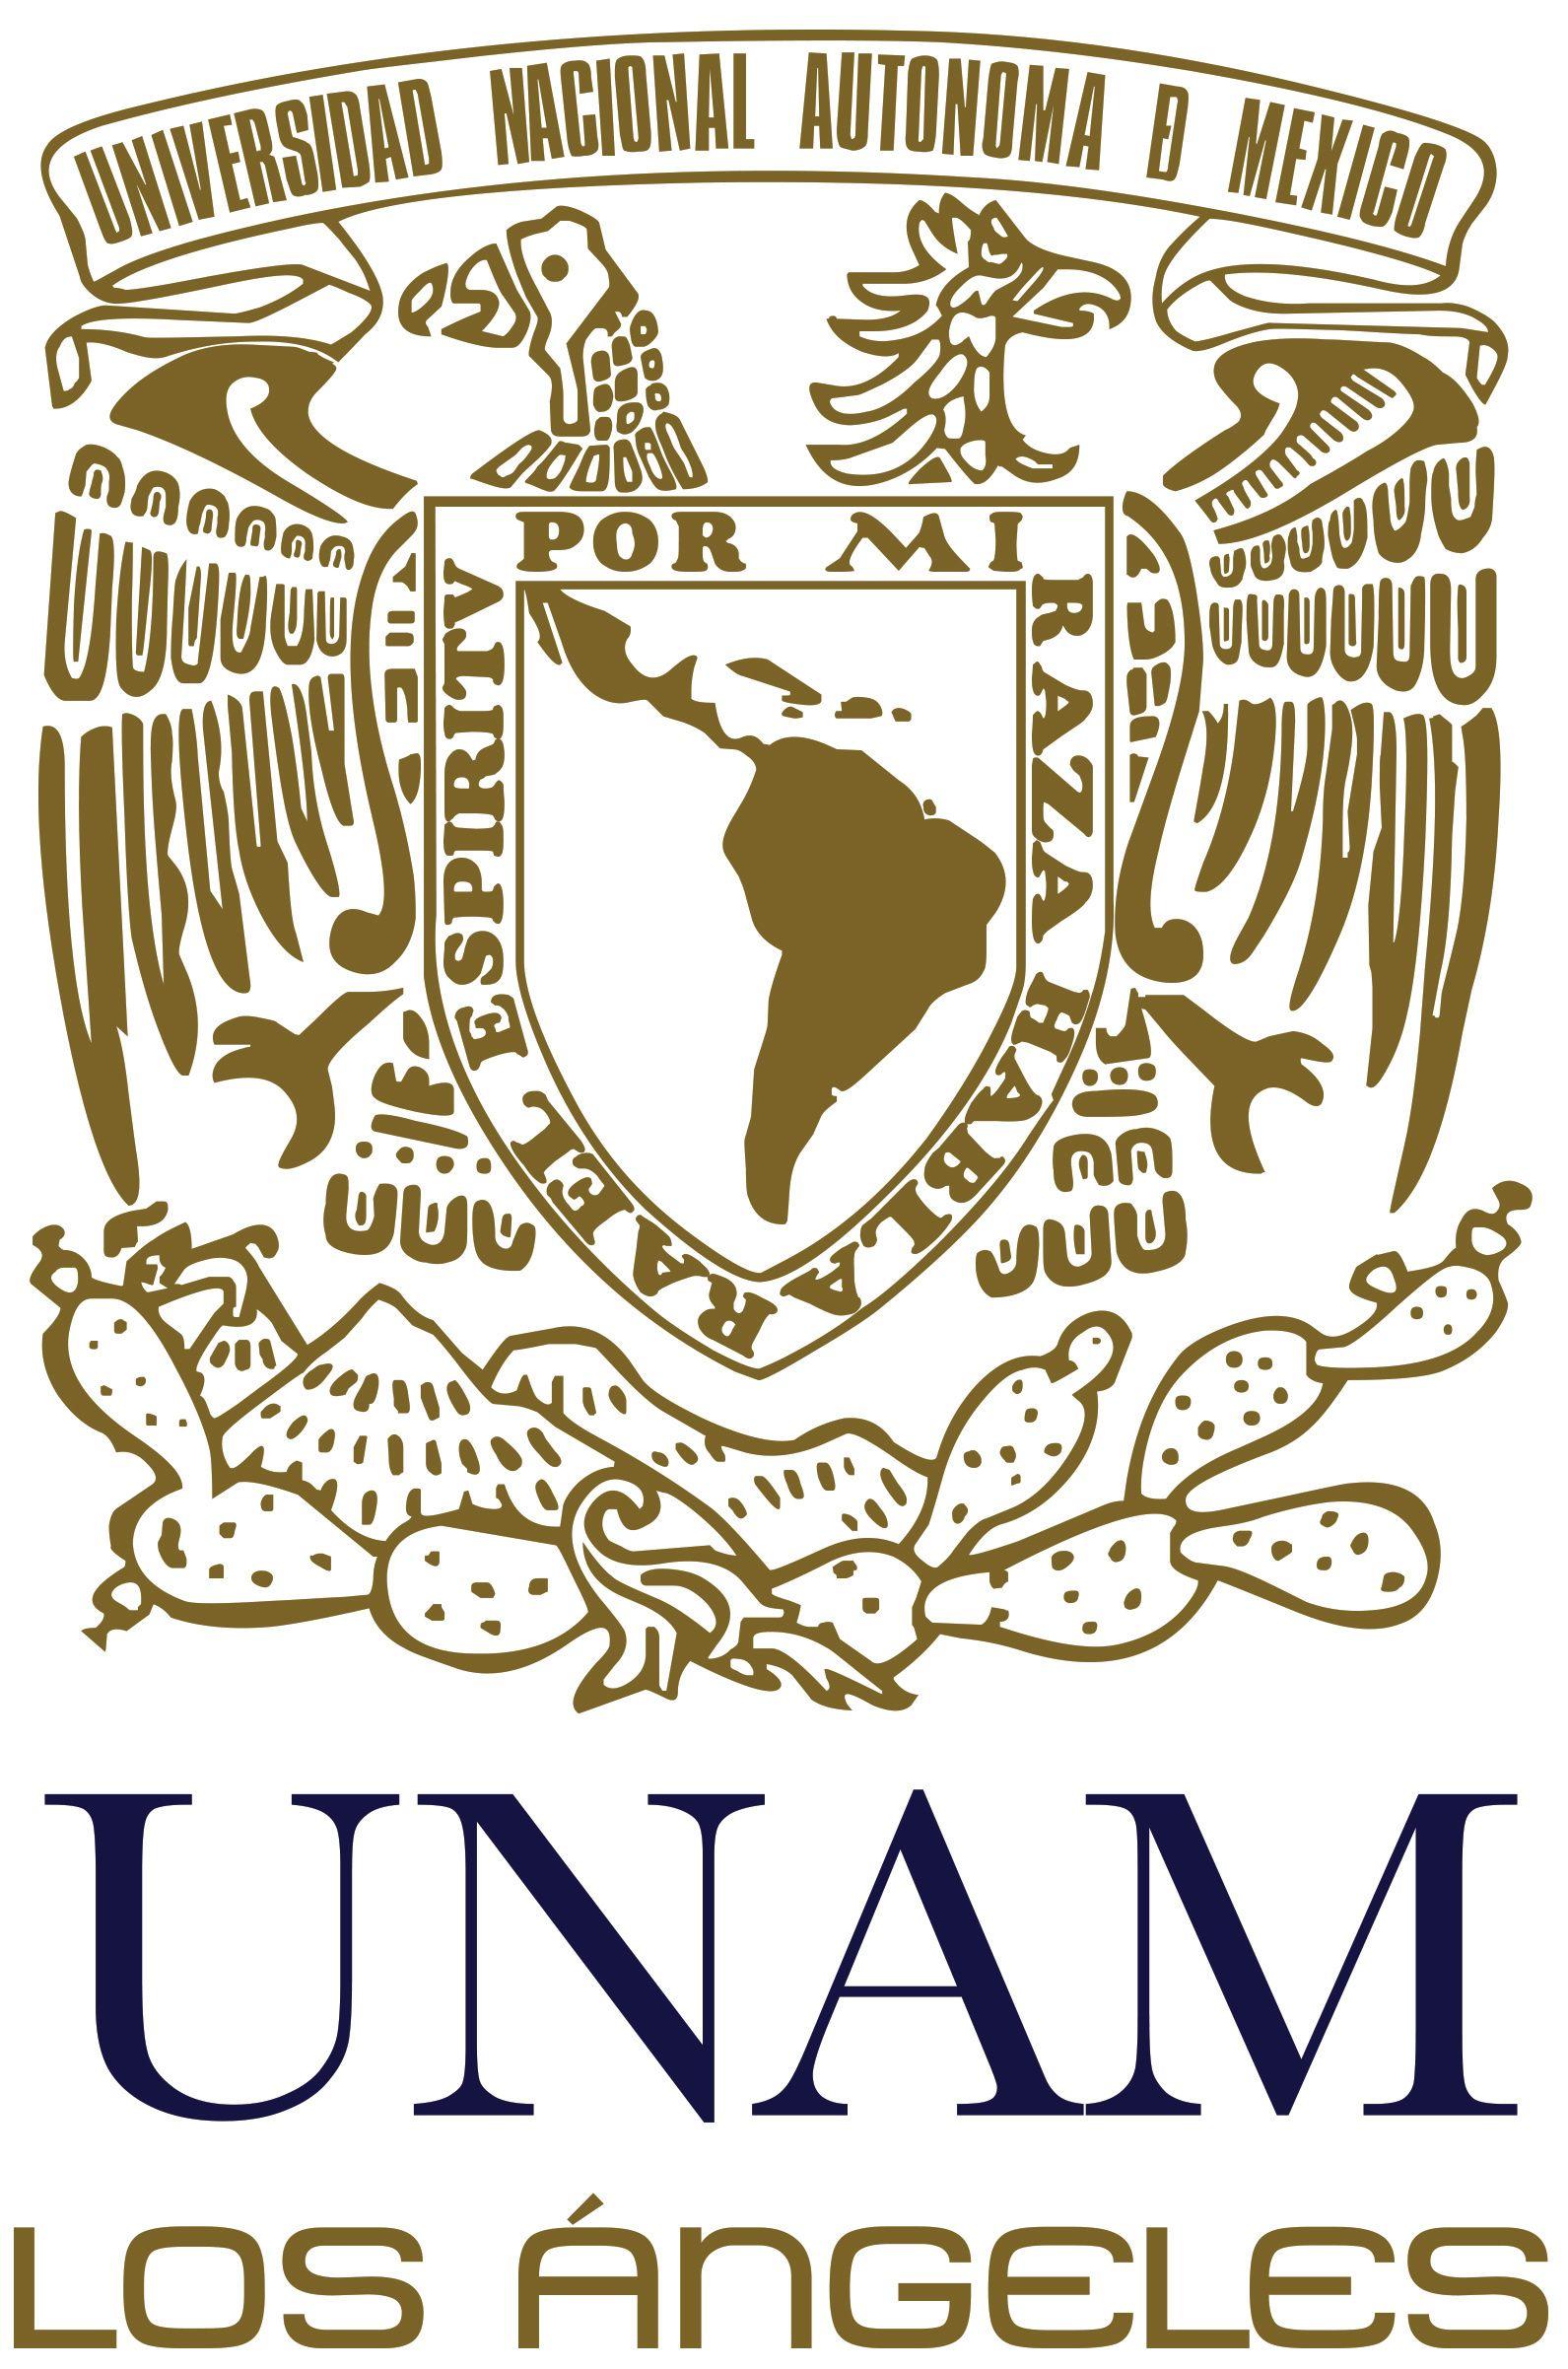 UNAM Logo - UNAM Los Angeles | Verano & Invierno Puma